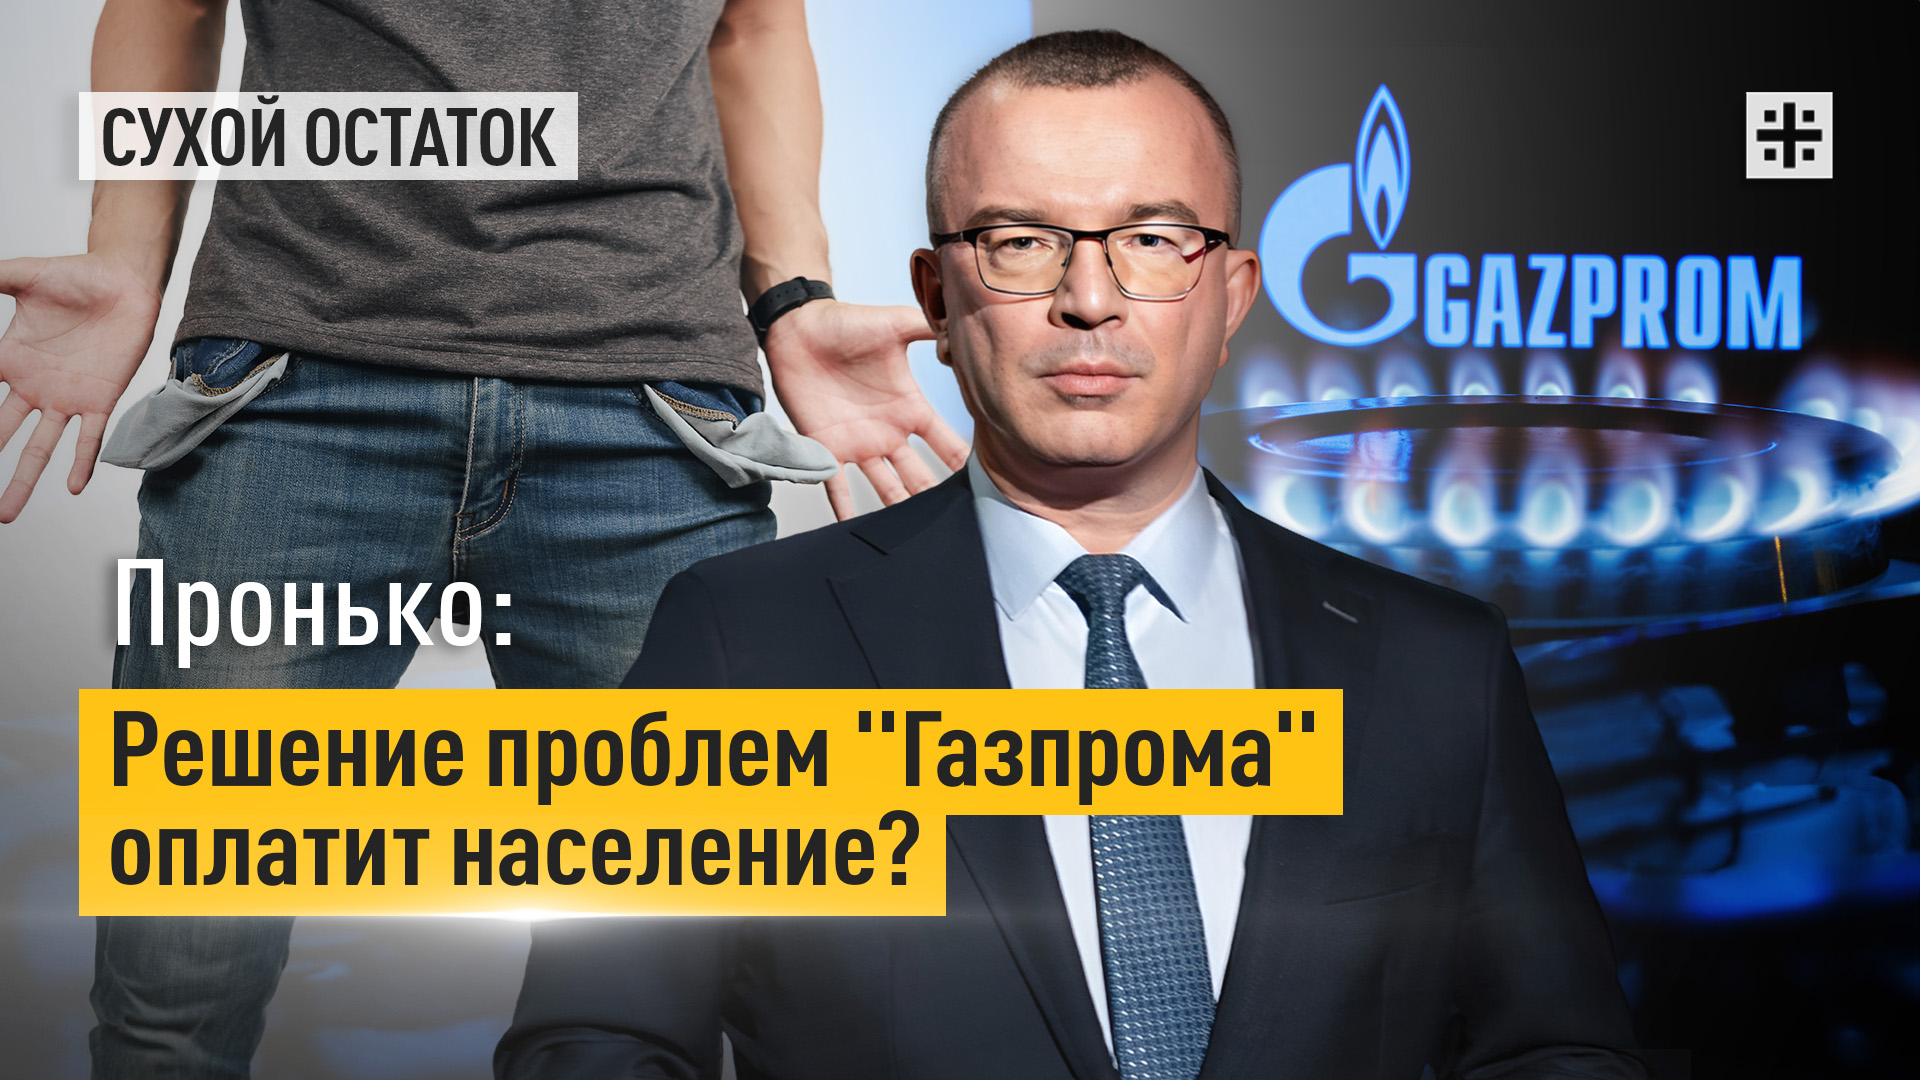 Пронько: Решение проблем "Газпрома" оплатит население?